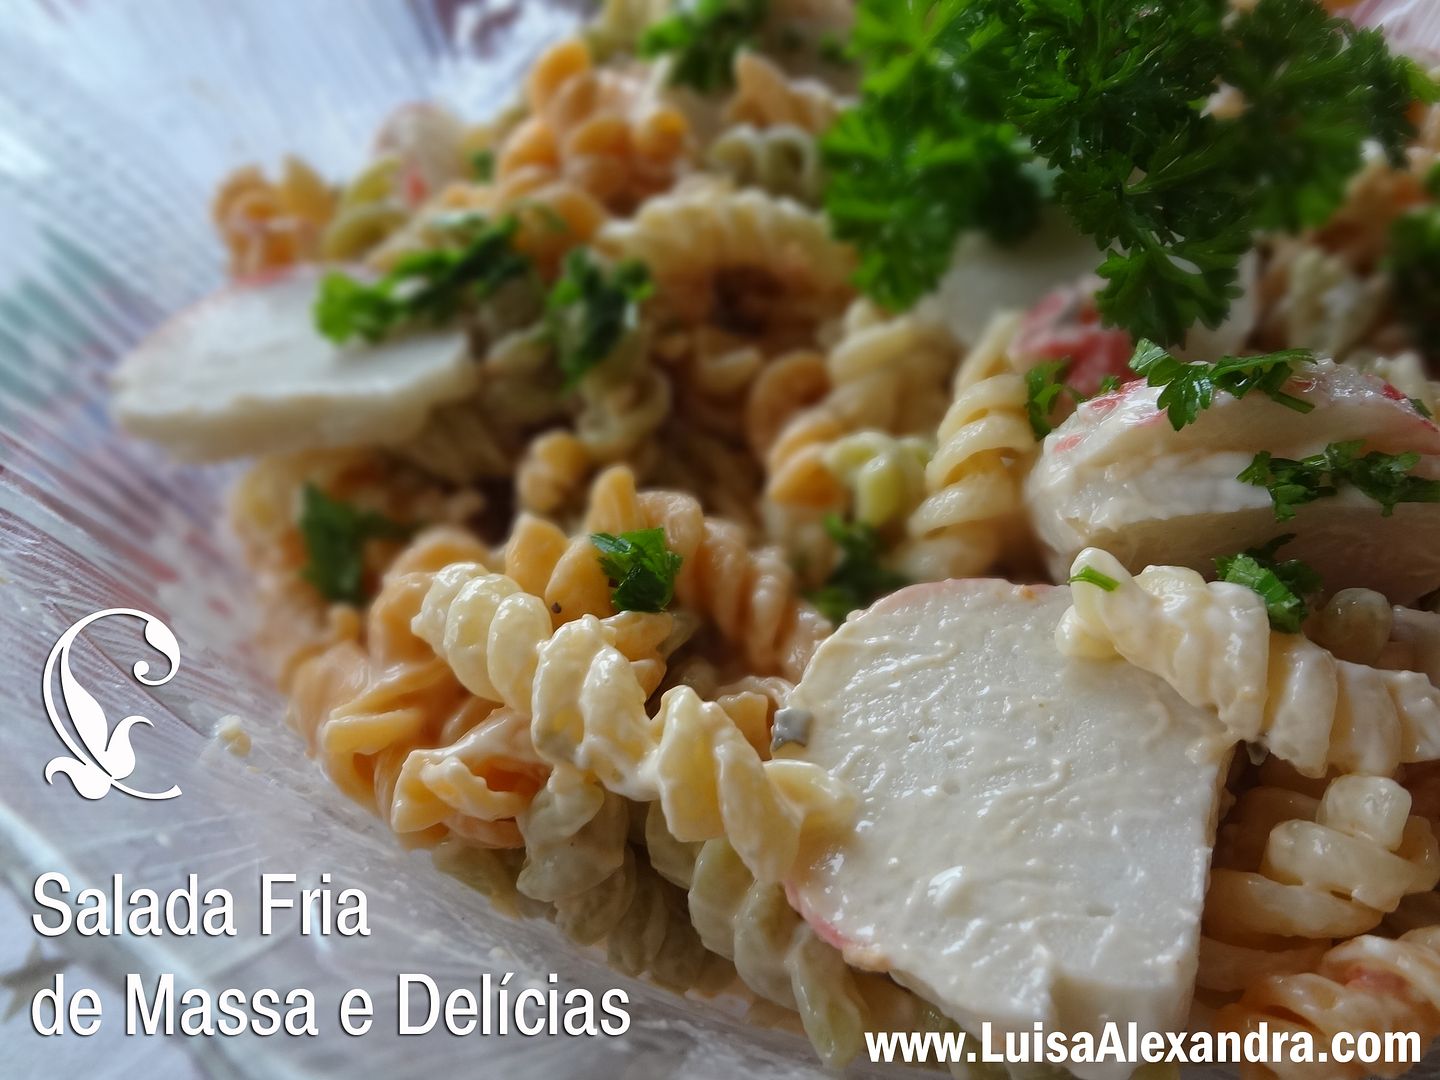 Salada Fria Massa e Delicias photo DSC07508.jpg